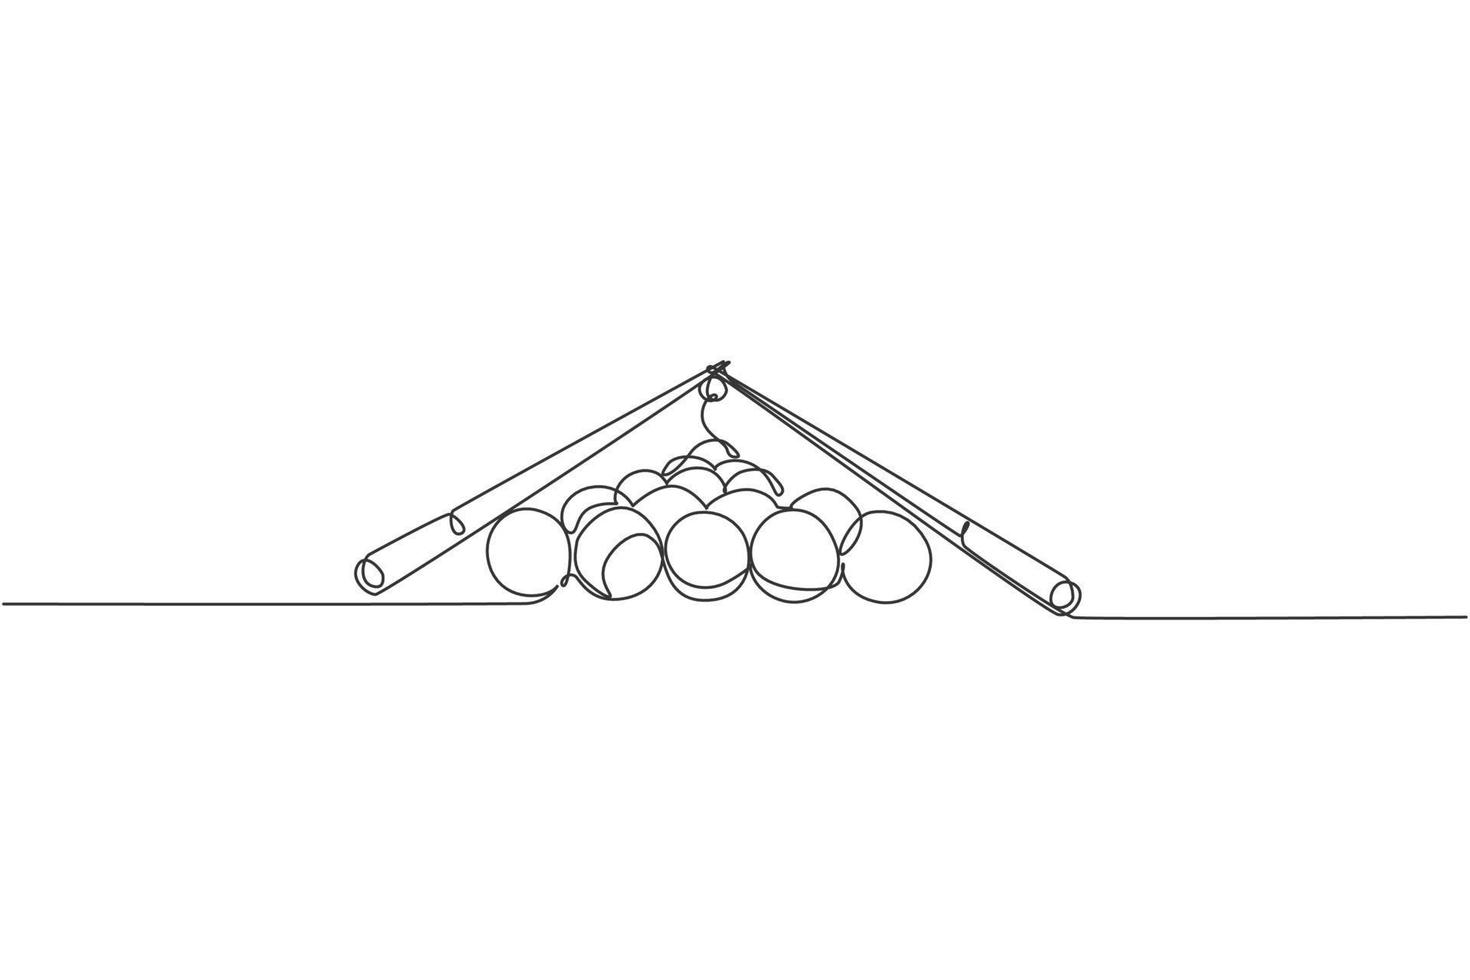 disegno a linea continua singola di una pila di palline triangolari a piramide per il gioco del biliardo nella sala da biliardo. concetto di gioco di sport indoor. grafico di illustrazione vettoriale di disegno di una linea alla moda